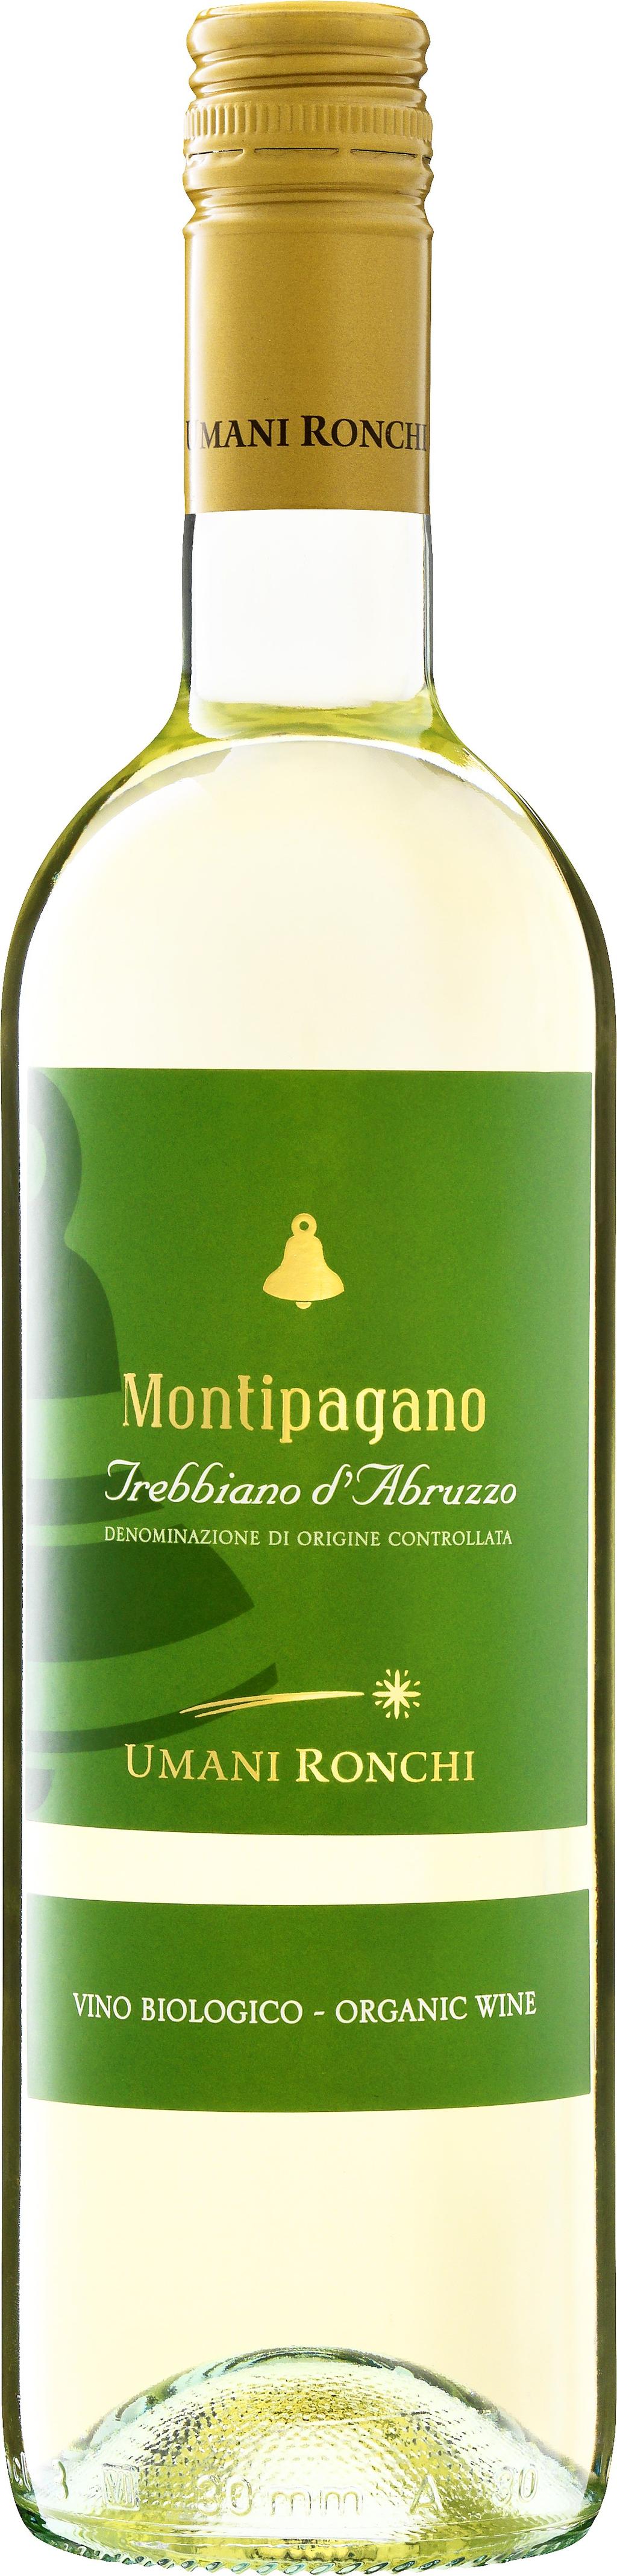 Umani Ronchi Montipagano Trebbiano 2017 Abruzzo, Italien Ung, fruktdriven och frisk stil med aromer av persika och citrus. Krispig och fruktig italiensk trebbiano.